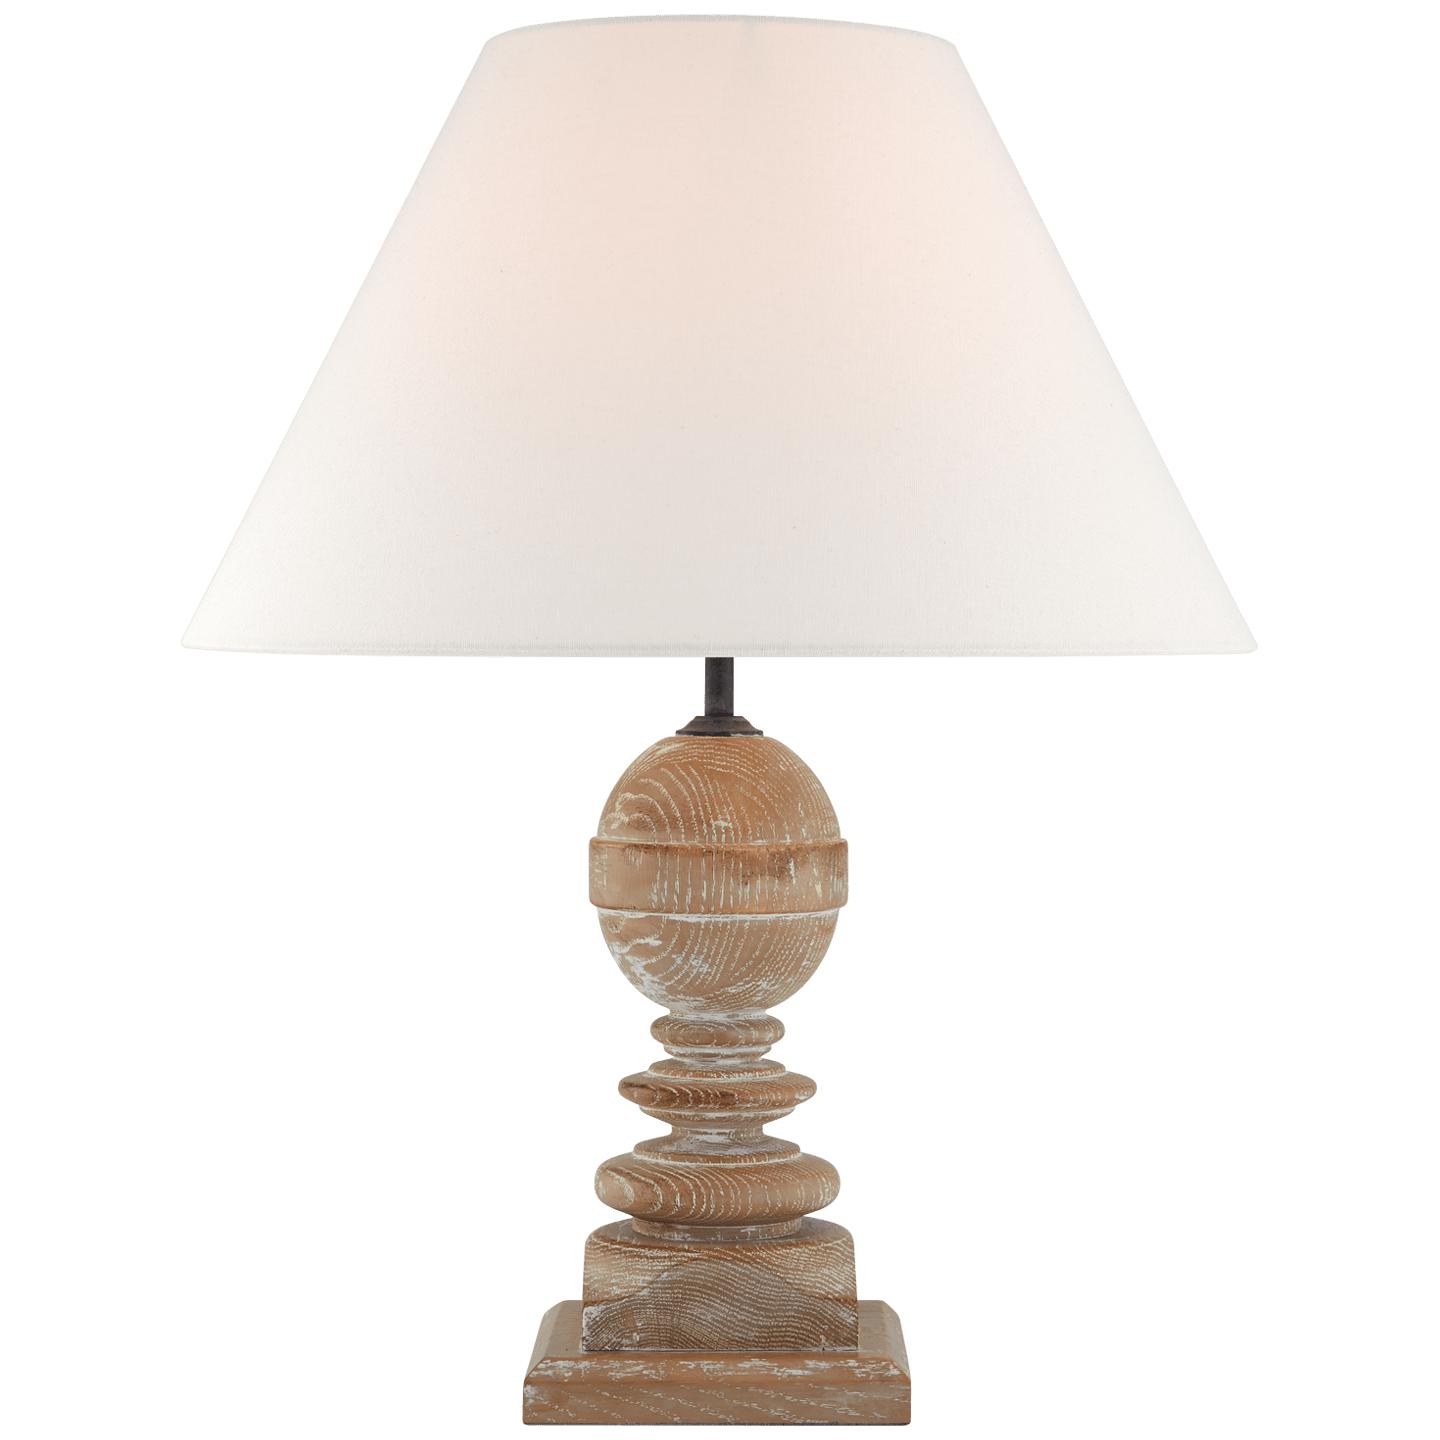 Купить Настольная лампа Piaf Medium Table Lamp в интернет-магазине roooms.ru